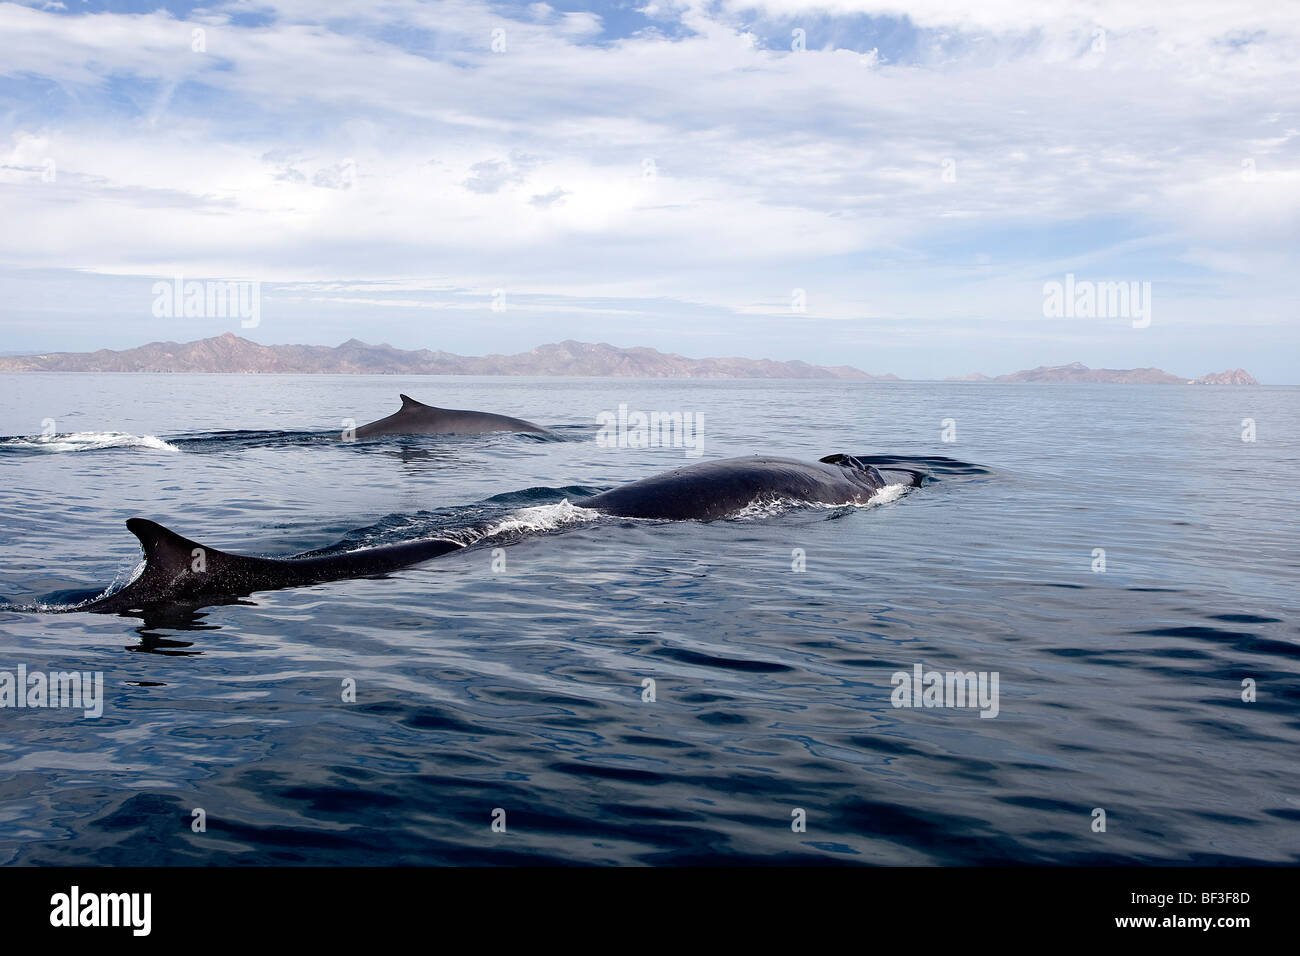 Le balenottere comuni, Finback balene, Rorquals comune (Balaenoptera physalus) nuoto in superficie. Foto Stock